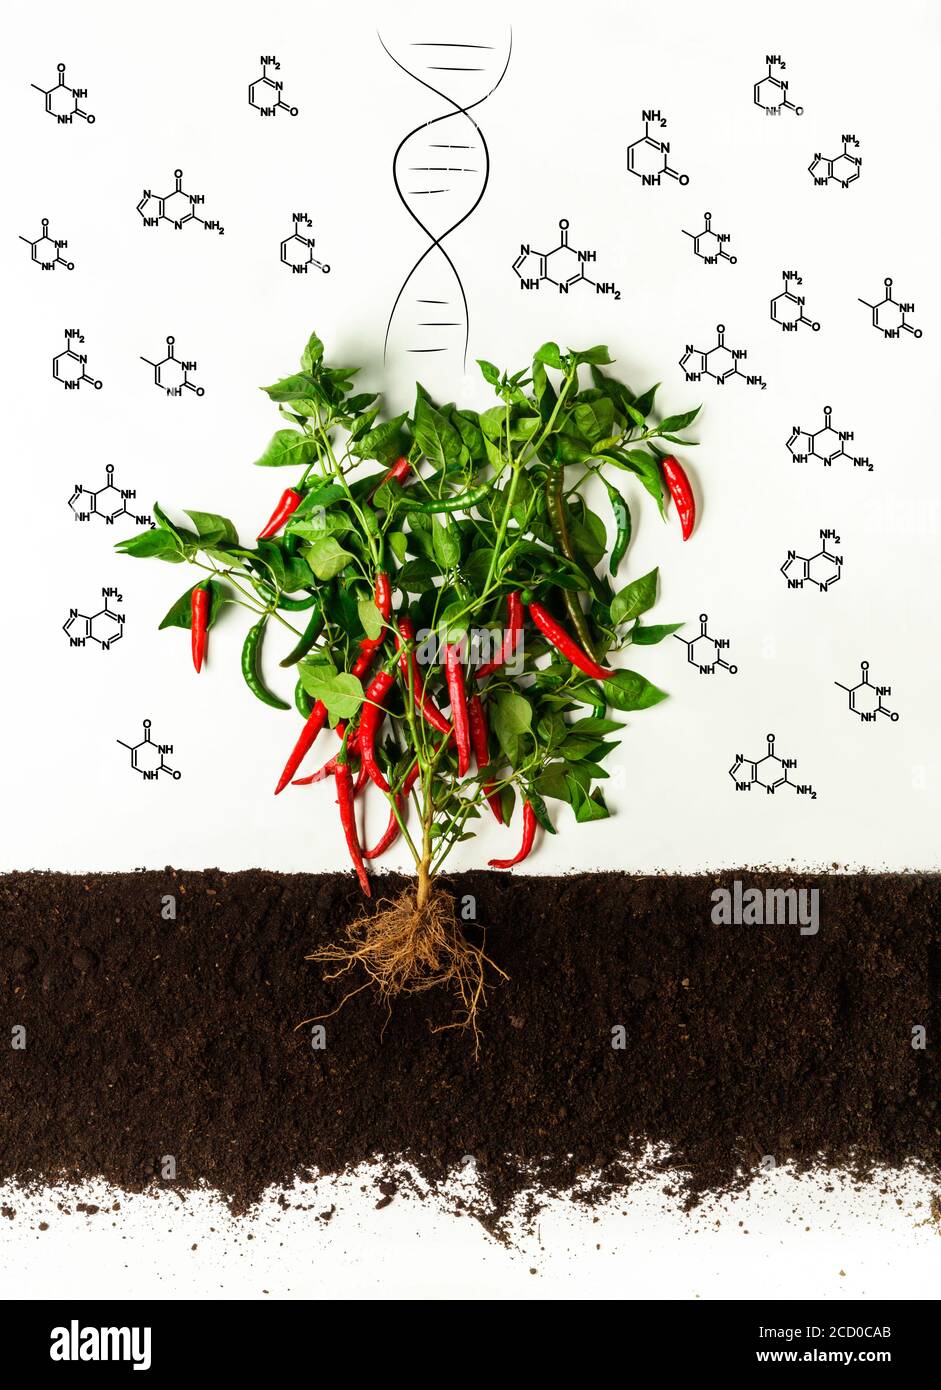 Productos genéticamente modificados. Arbusto de pimienta de Chile que crece en el suelo, moléculas químicas y hélice de ADN sobre fondo blanco Foto de stock